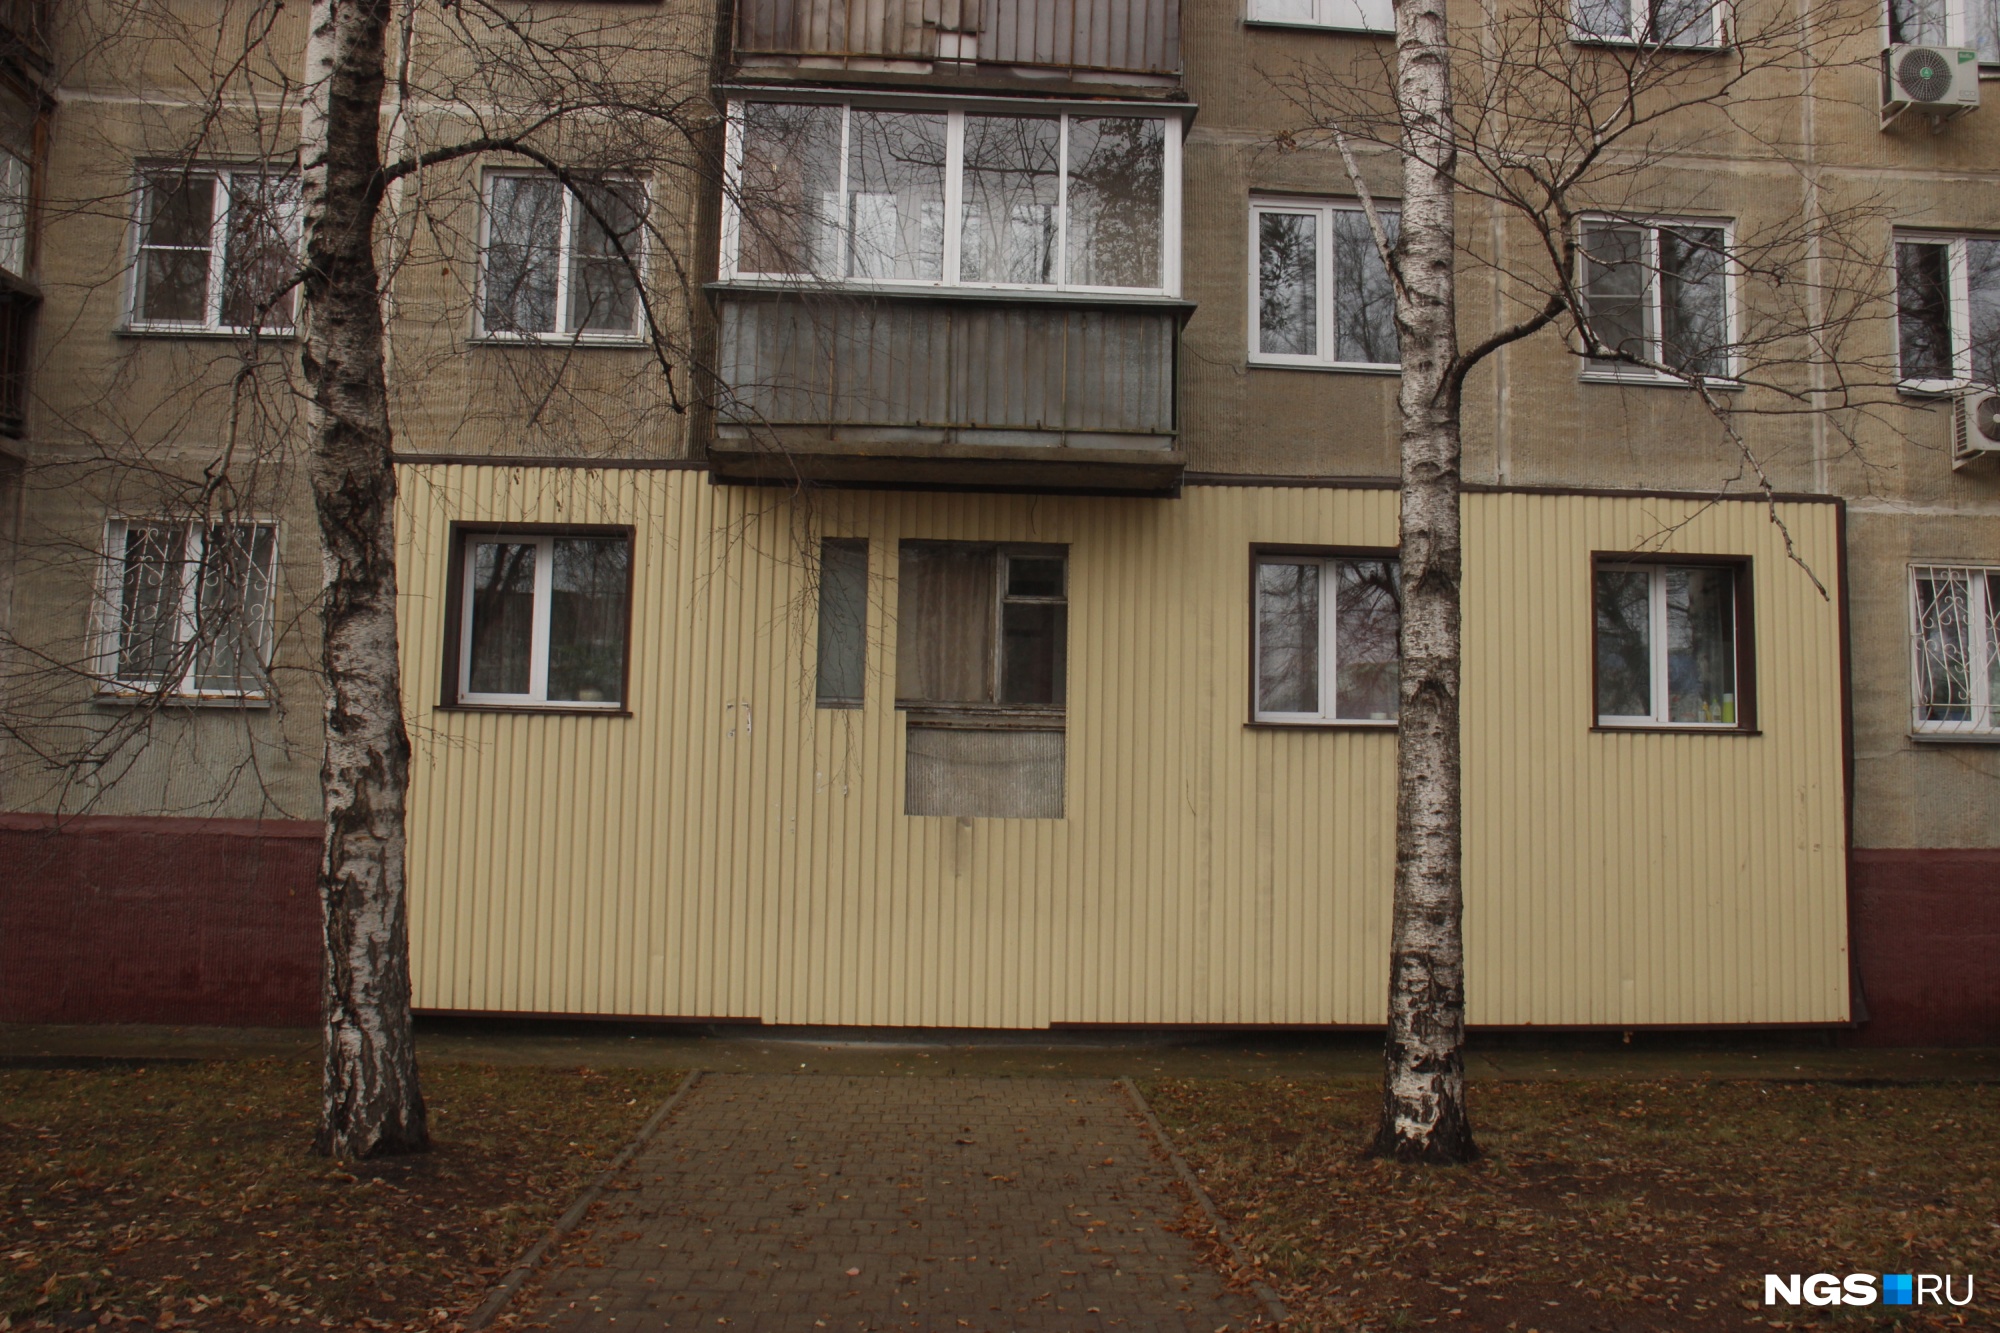 Квартира с внешней отделкой и дорожкой, ведущей в стену, в доме на улице Немировича-Данченко